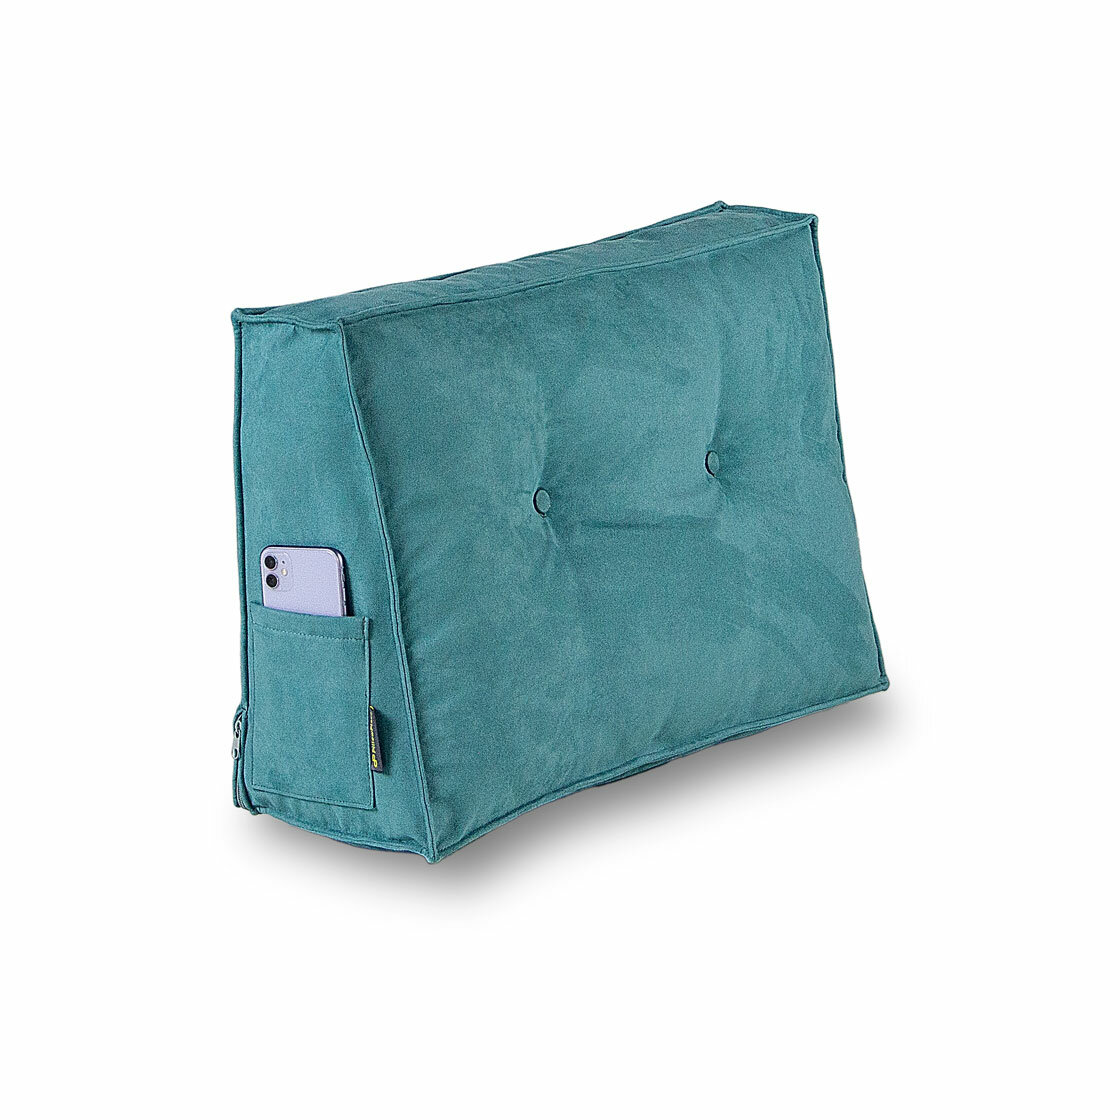 Большая диванная подушка для спины на диван на кровать для чтения и отдыха PillowPlace TIME Бирюза съемный чехол 65 см